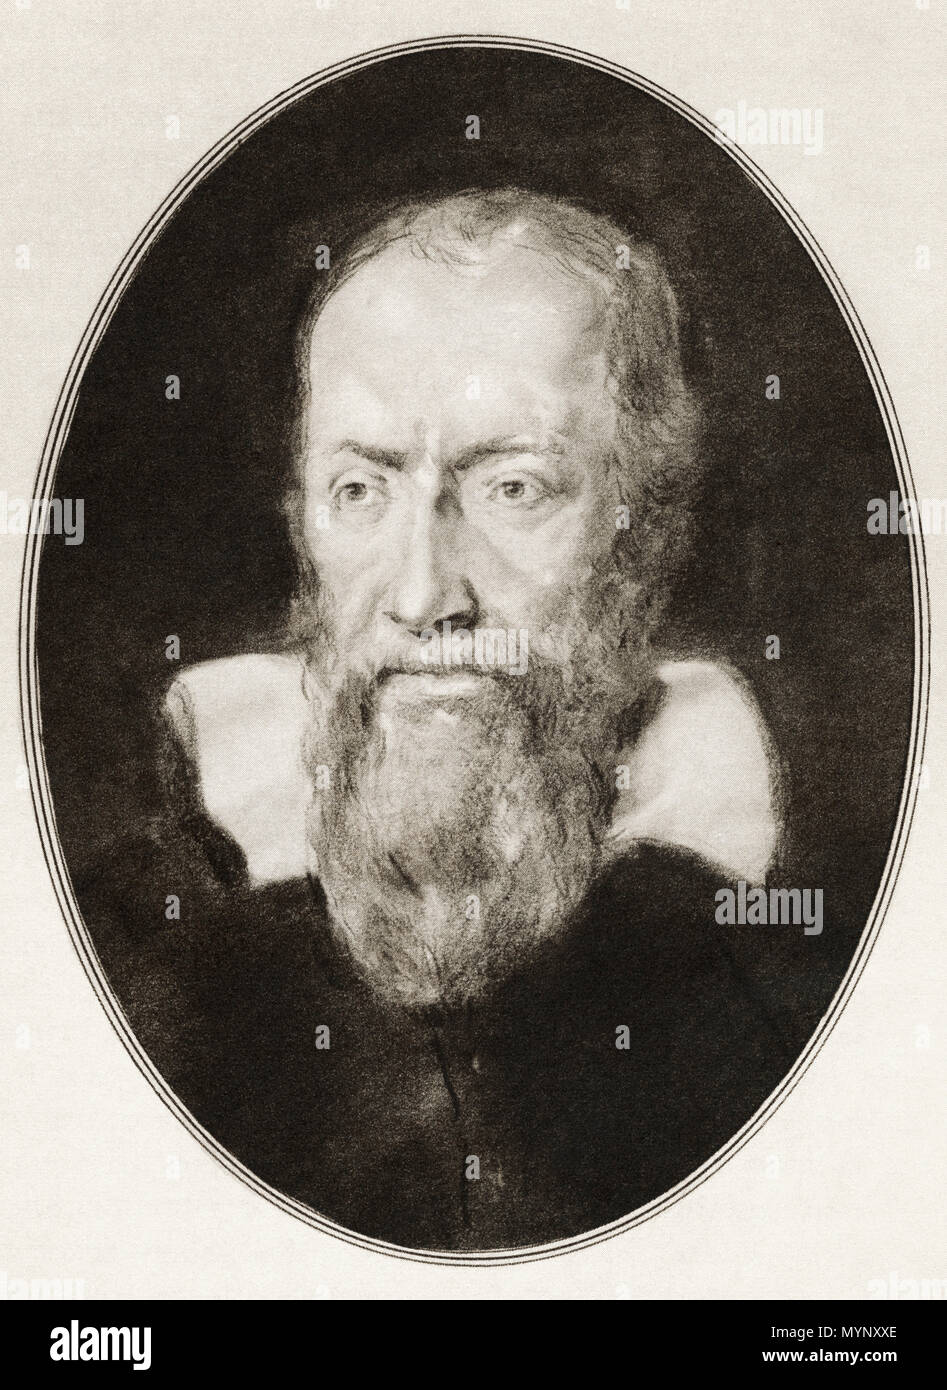 Galileo Galilei, 1564 - 1642. Italienischen Universalgelehrten. Abbildung von Gordon Ross, US-amerikanischer Künstler und Illustrator (1873-1946), von lebenden Biographien berühmter Männer. Stockfoto